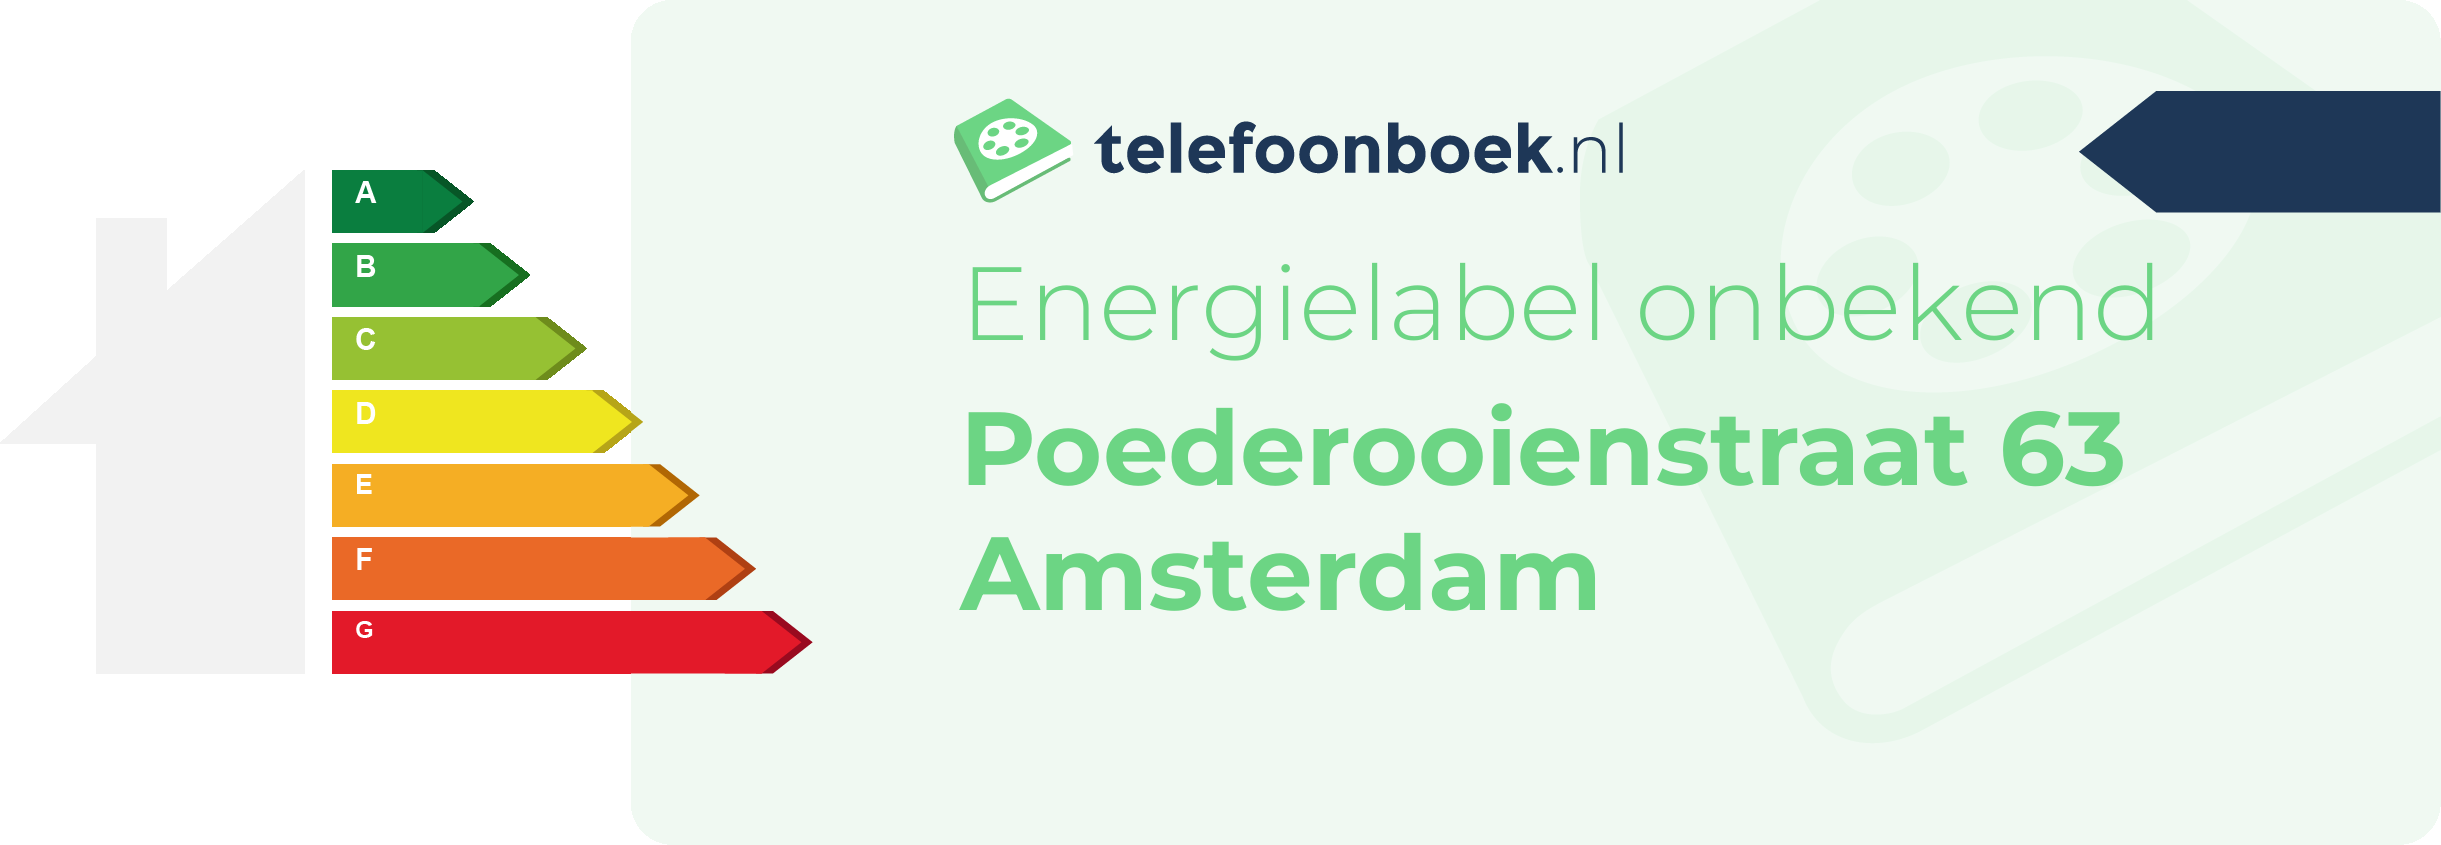 Energielabel Poederooienstraat 63 Amsterdam